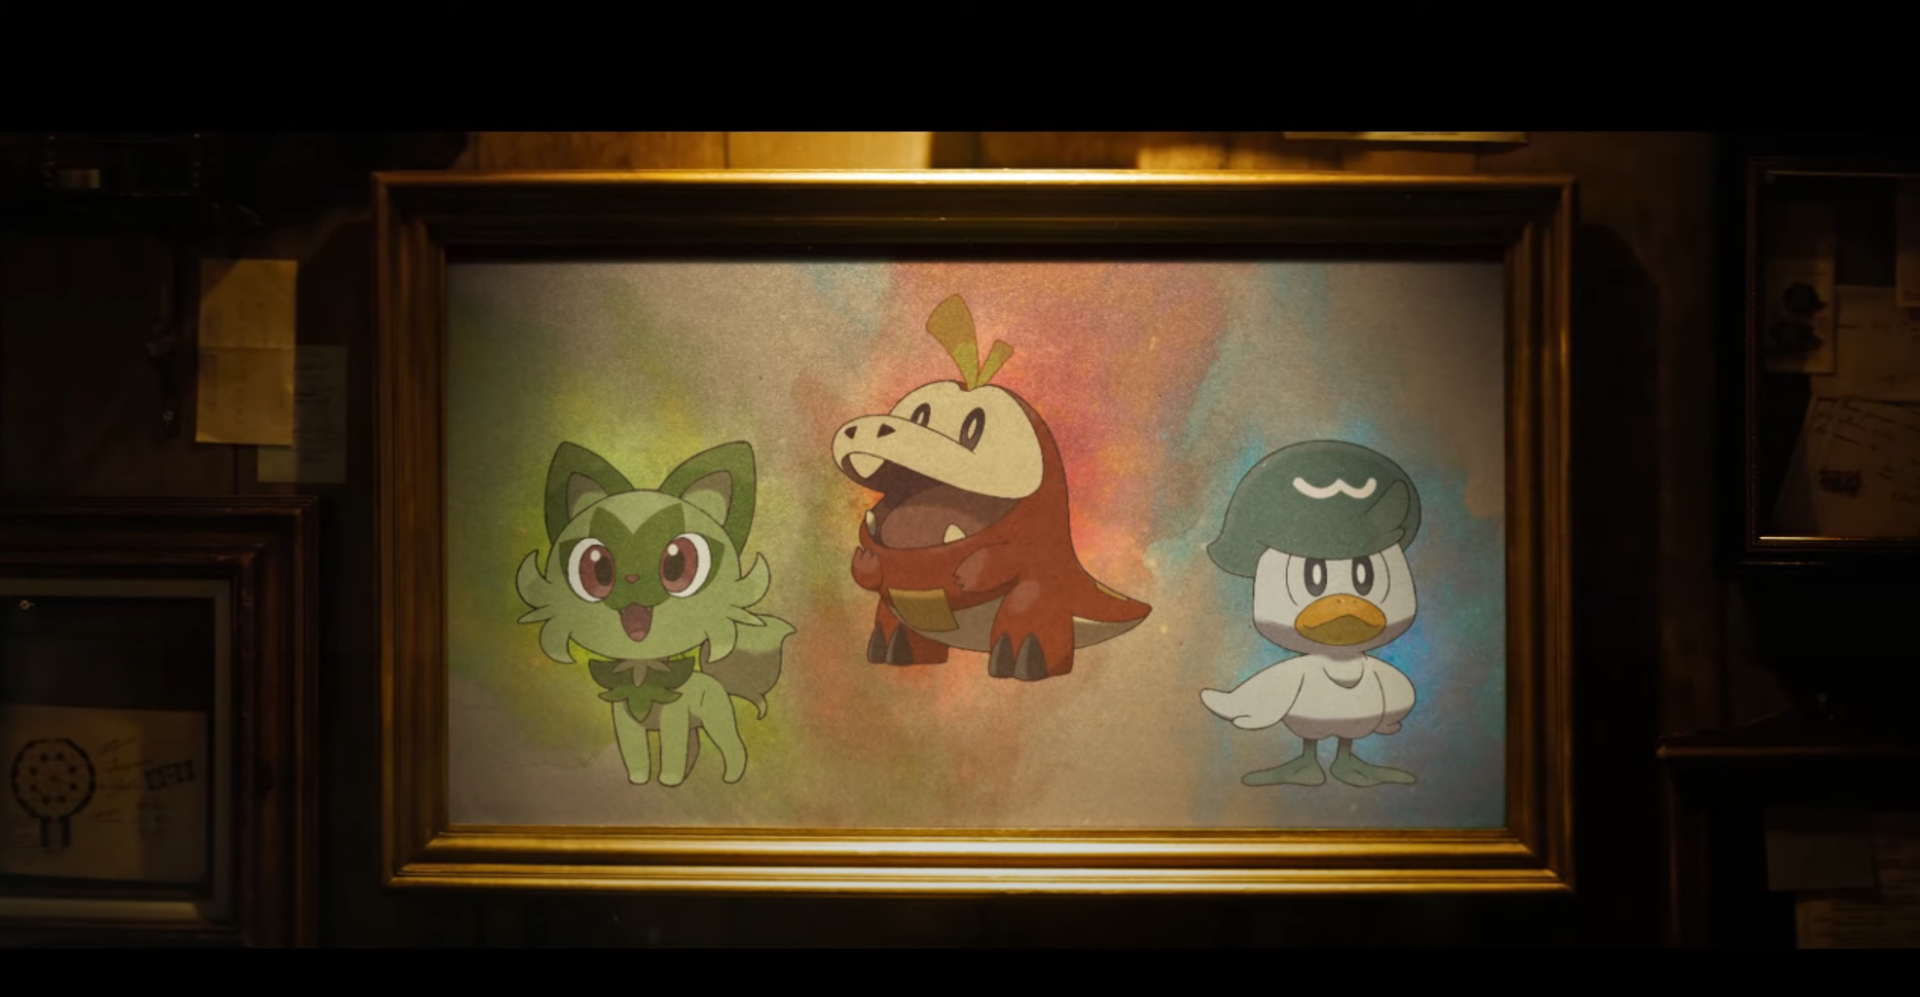 Sprigatito, Fuecoco y Quaxly van a ser los tres pokémon iniciales de Pokémon Scarlet y Violet